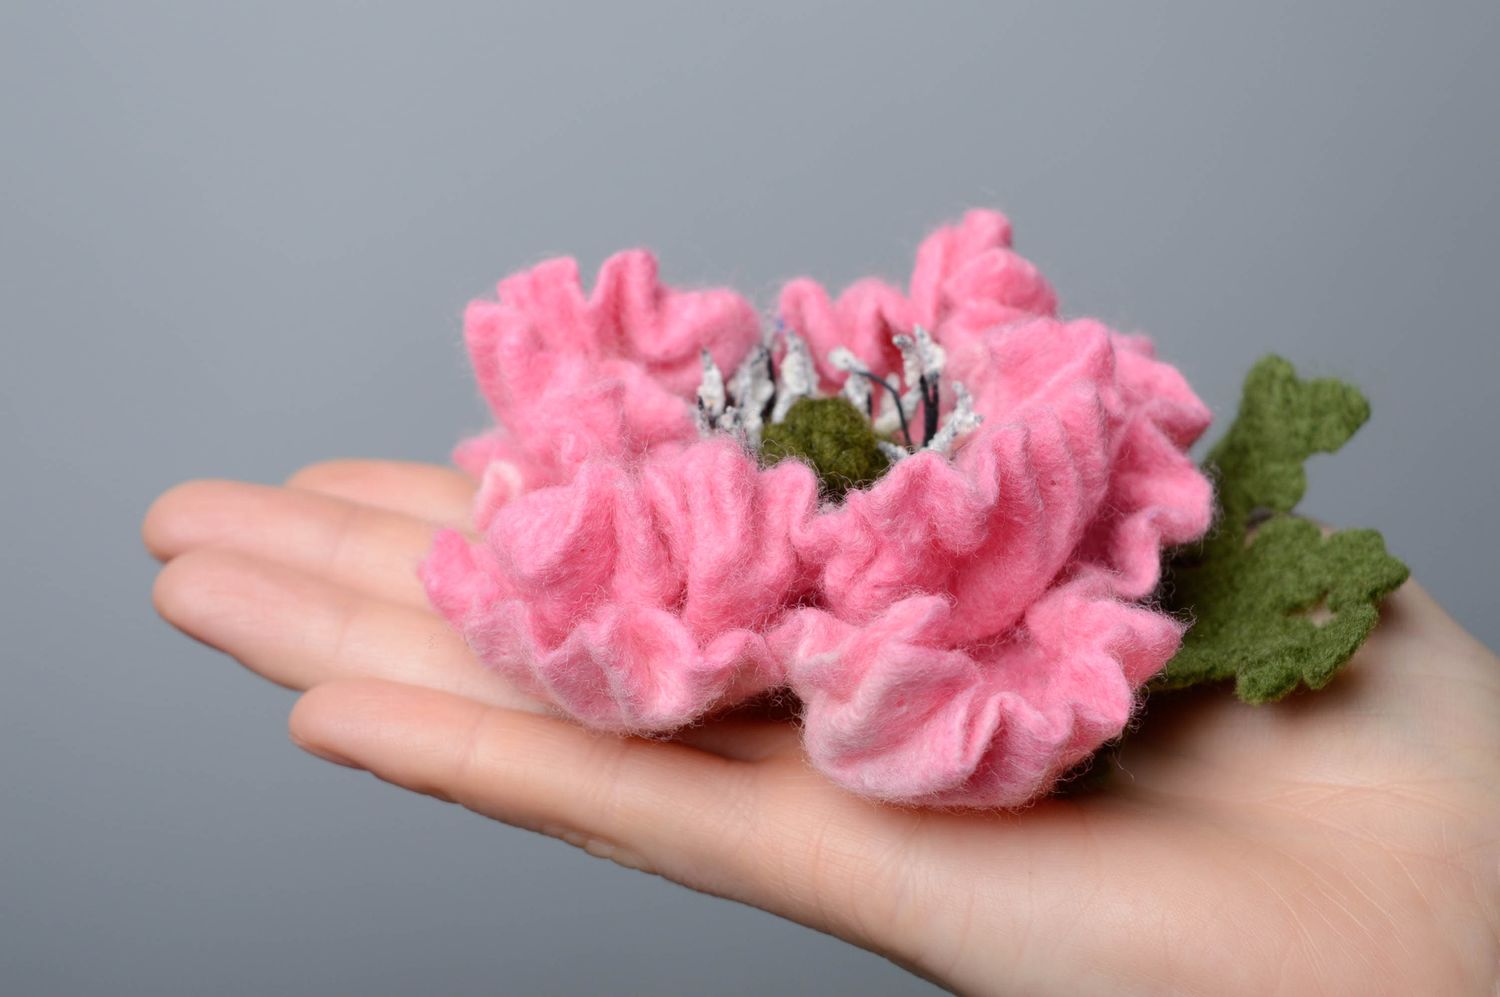 Брошь из шерсти в технике валяния в виде крупного цветка фото 4